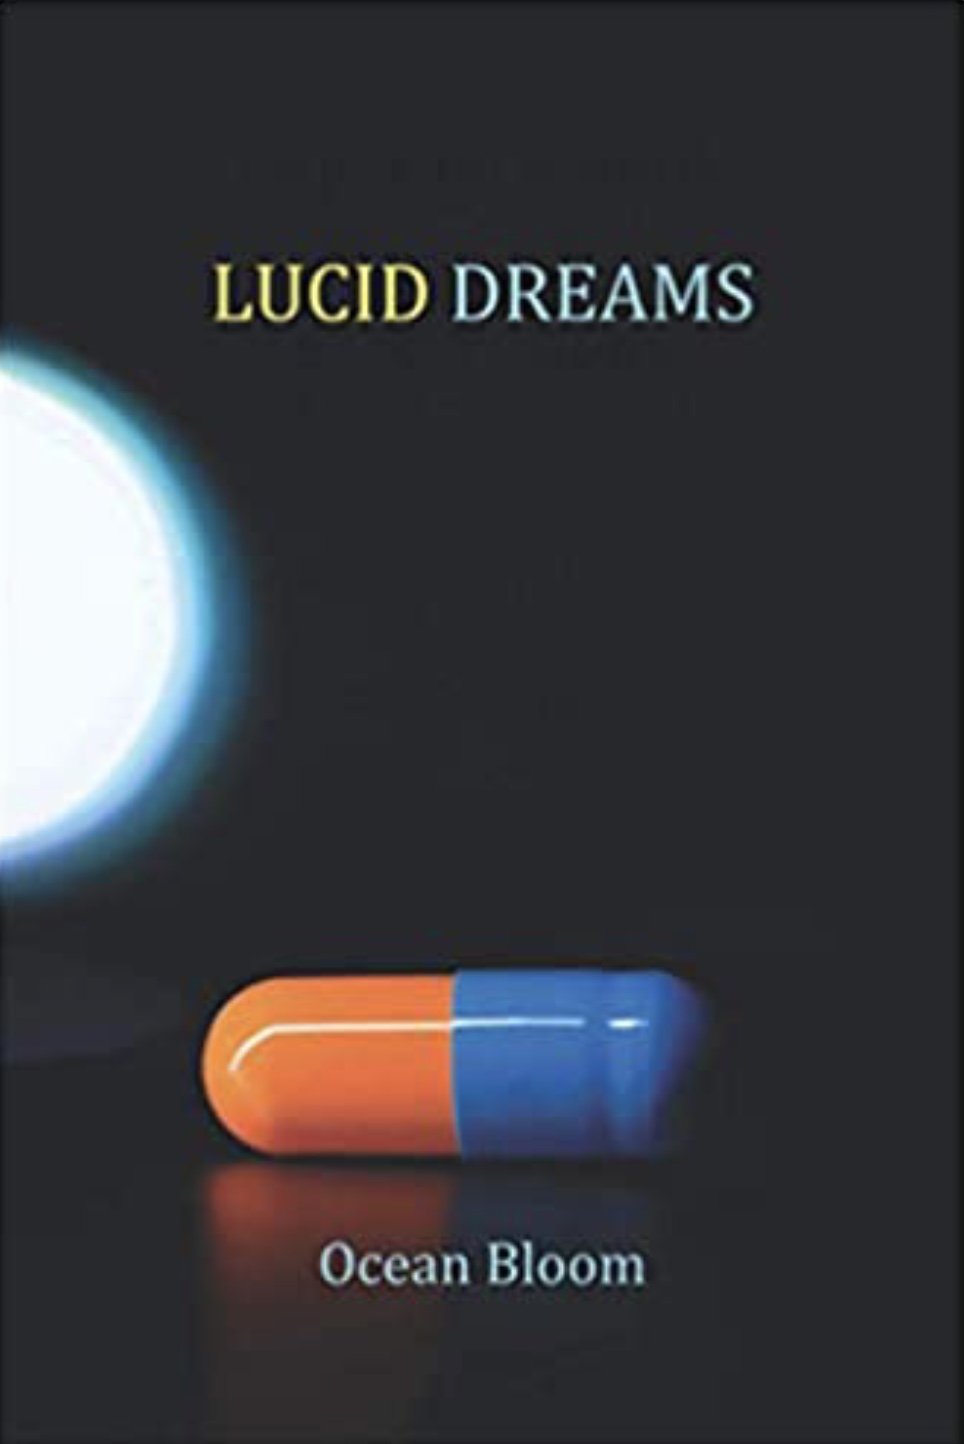 FREE: Lucid Dreams by Ocean Bloom